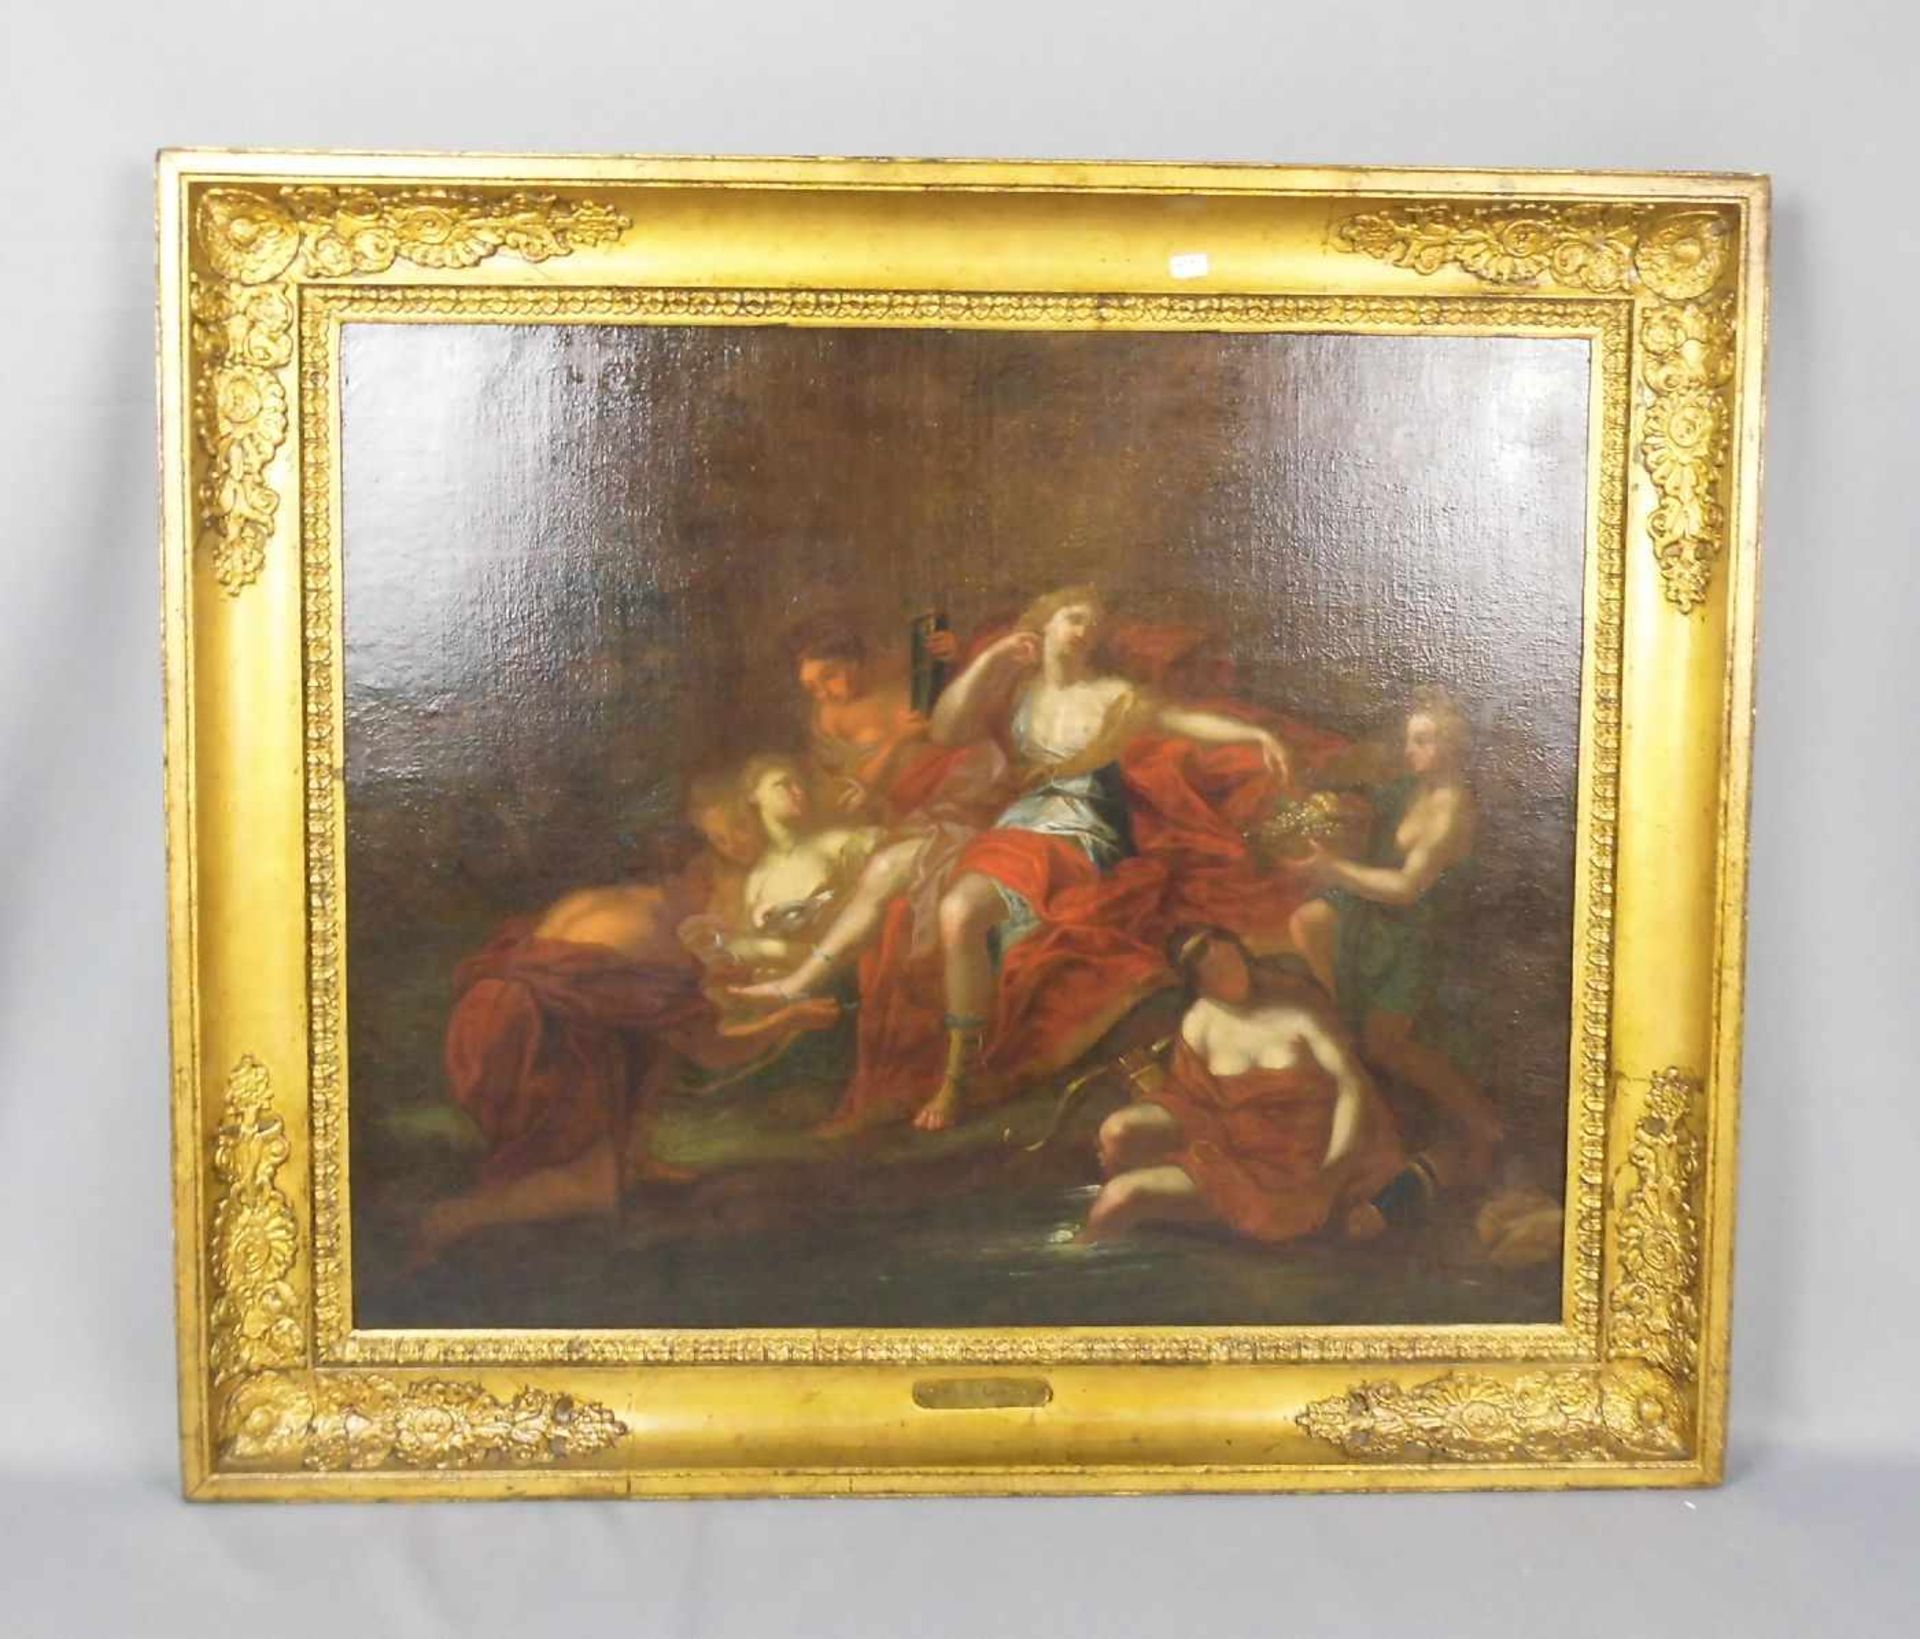 ANONYMUS (Maler des 18. Jh.) - Gemälde / painting: "Diana mit Begleiterinnen am Bachlauf", Öl auf